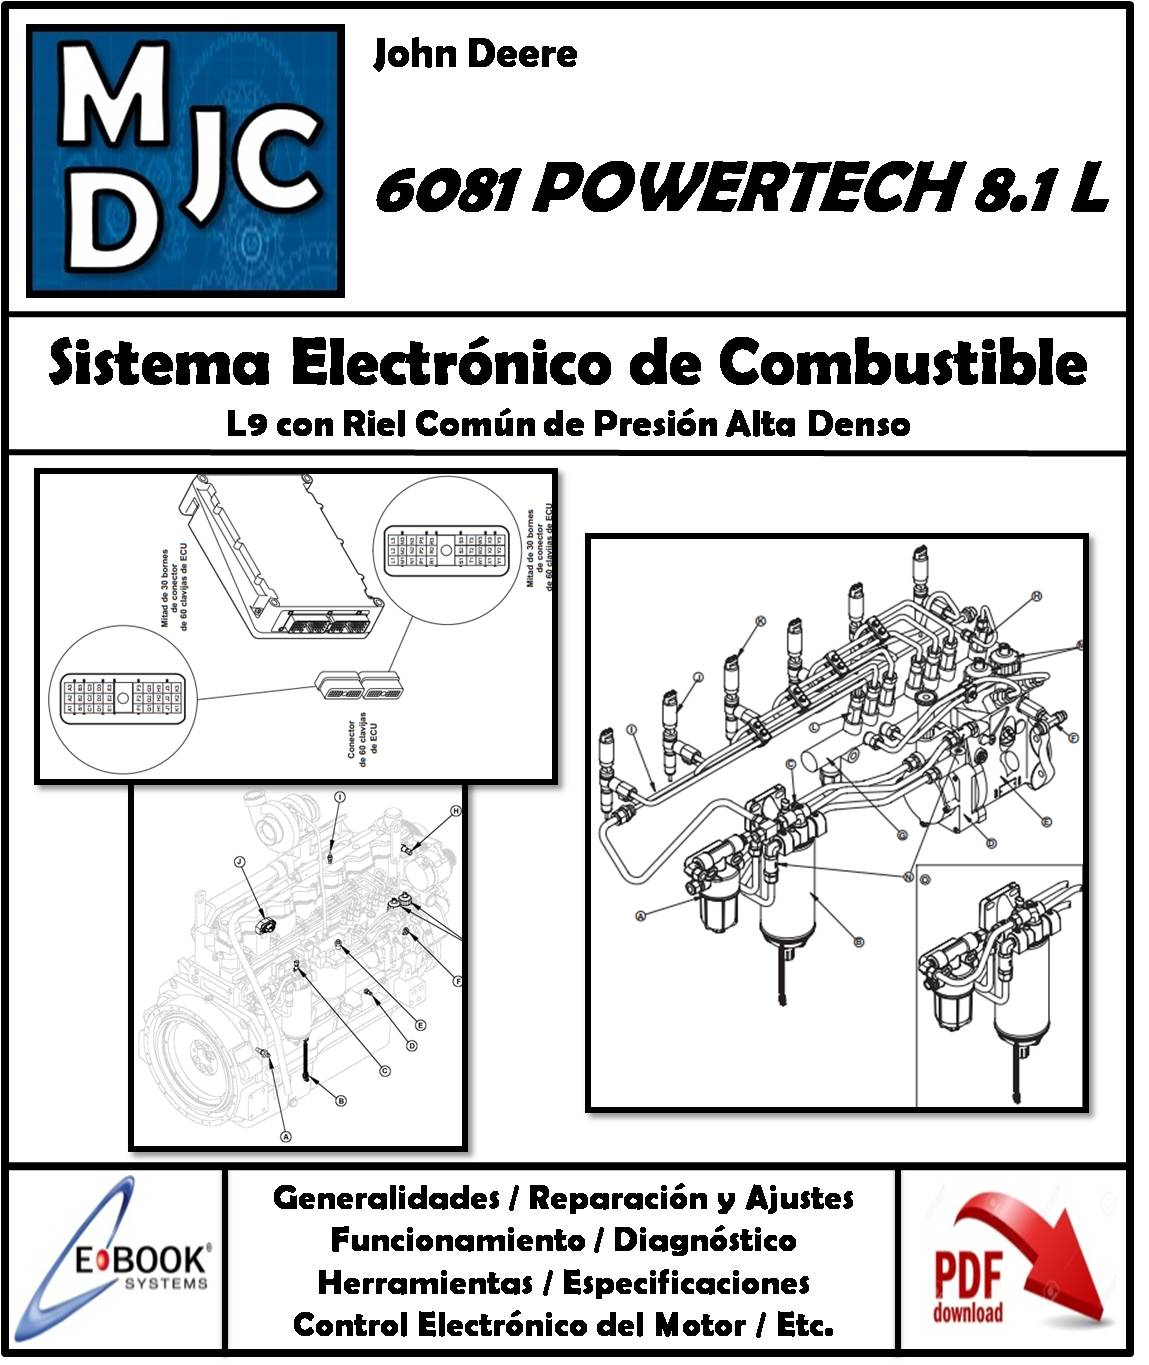 John Deere 6081 Powertech 8.1 L